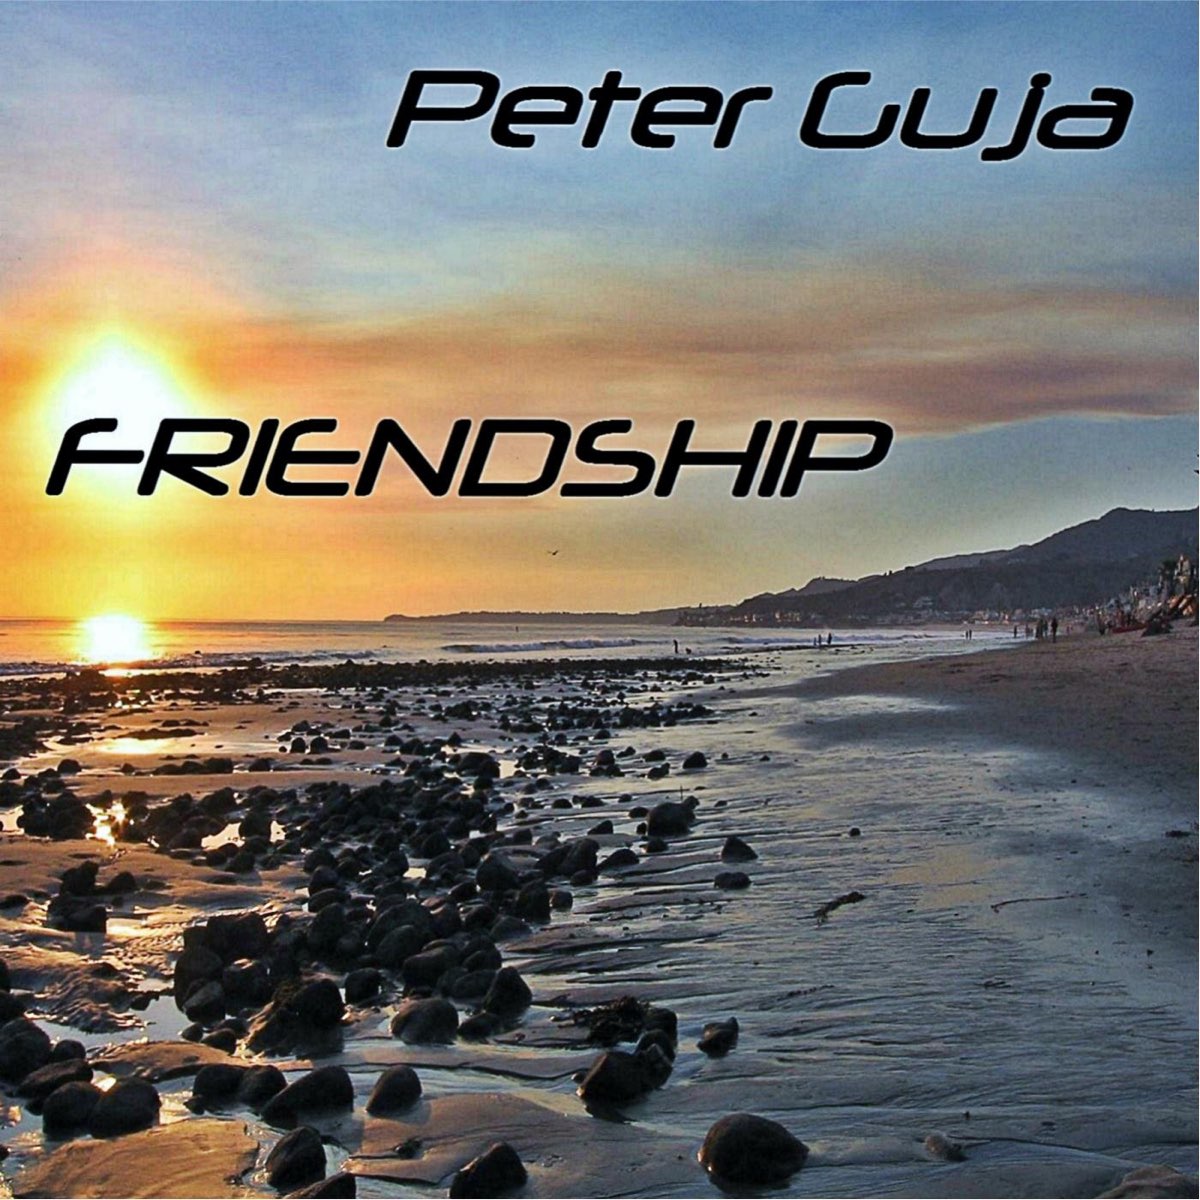 Peters friends. Peter Guja – feelings. Friendships слушать. Friendships слушать песню. Muzdek Guja.